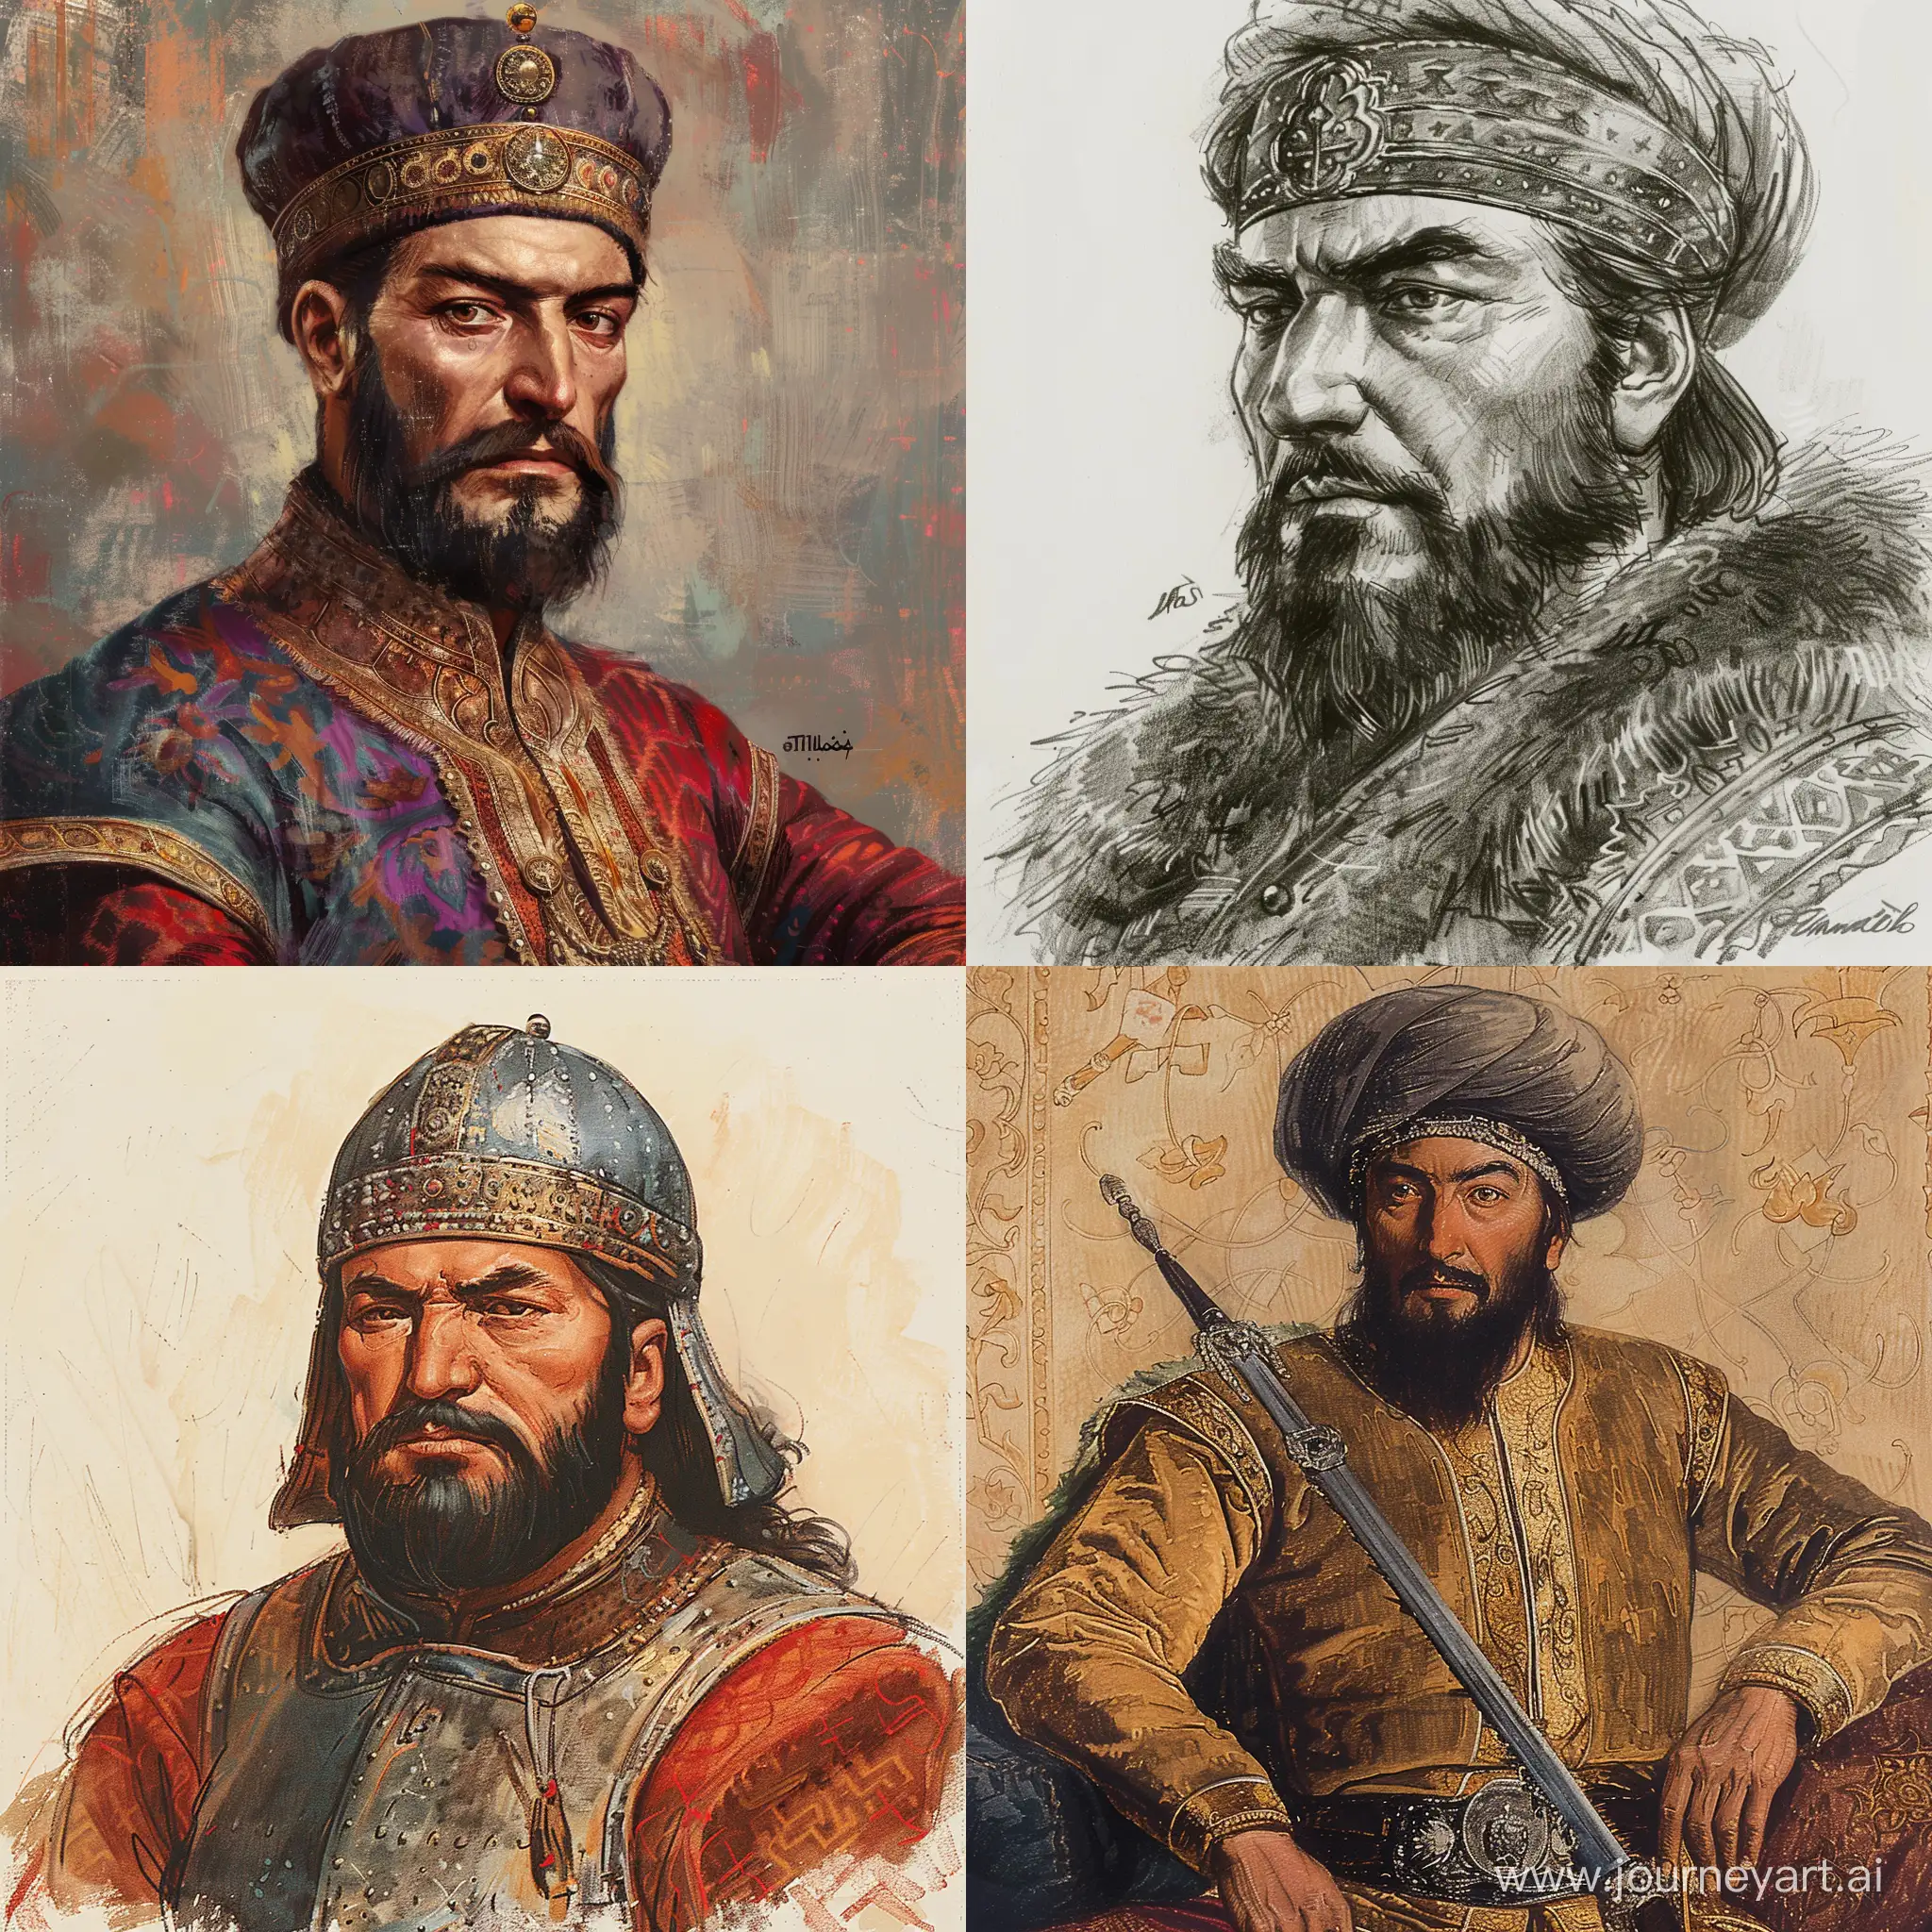 Timur-the-Great-TurcoUzbek-Conquerors-14th-Century-Triumphs